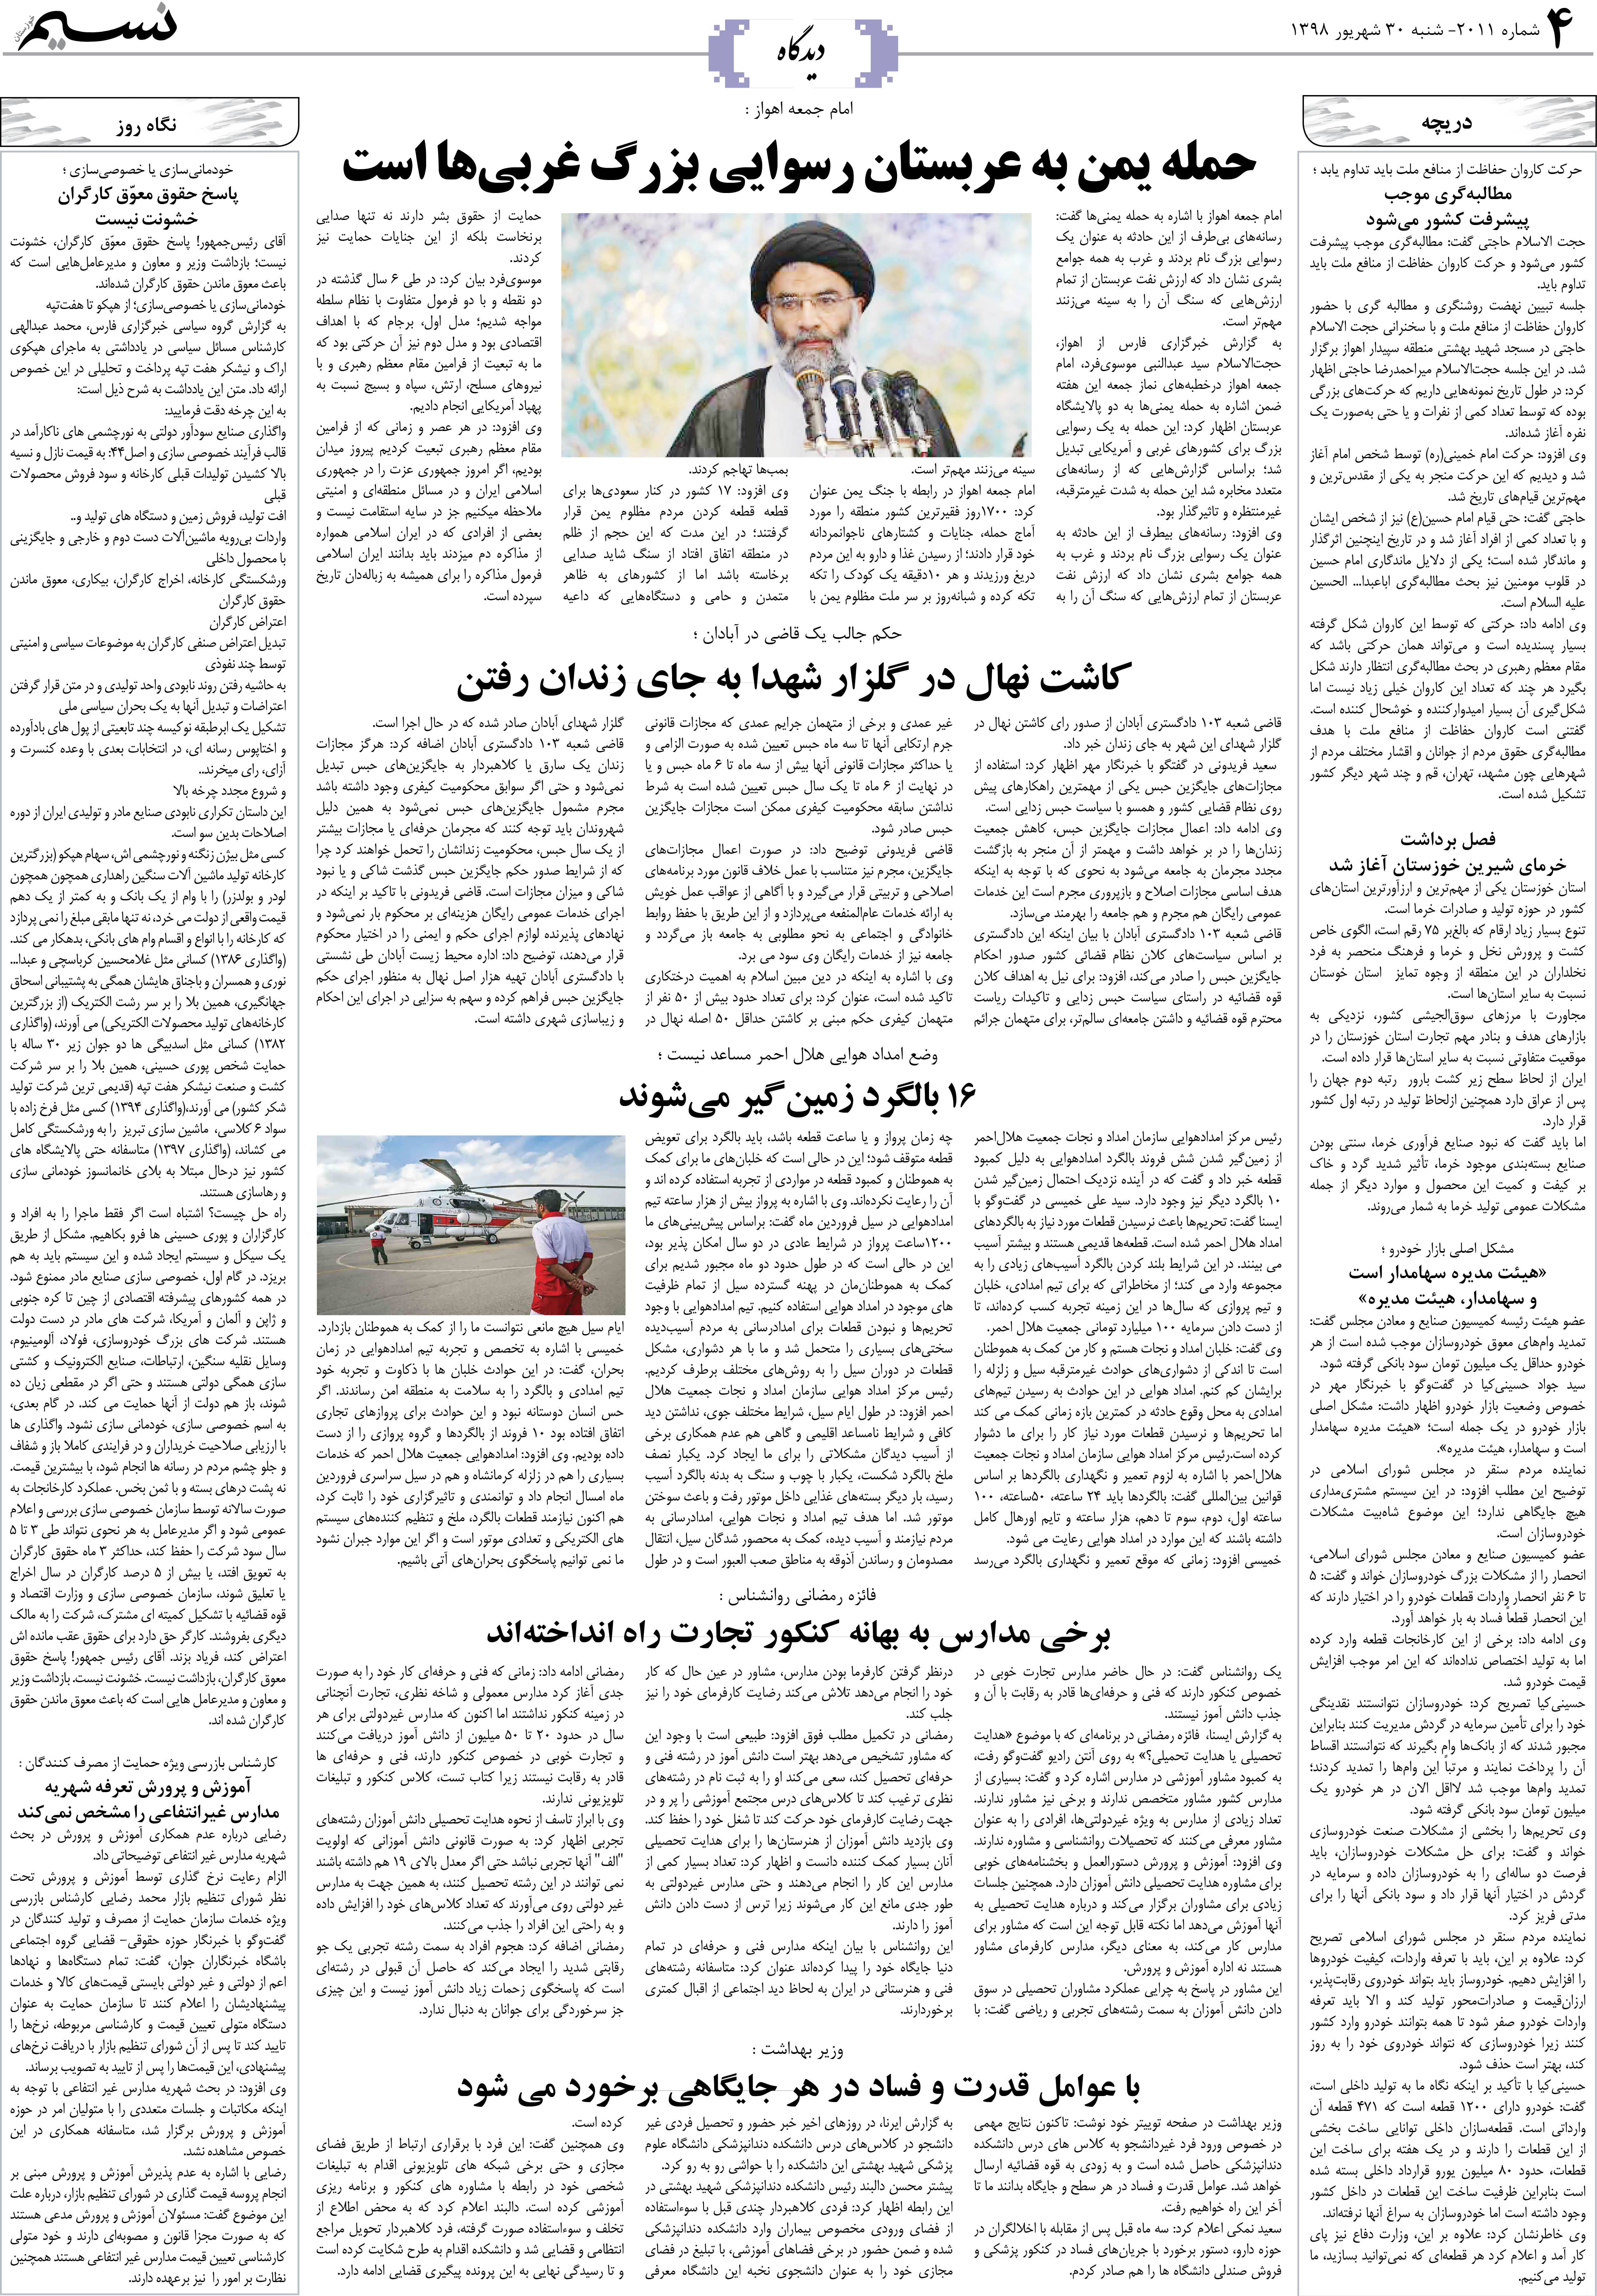 صفحه دیدگاه روزنامه نسیم شماره 2011